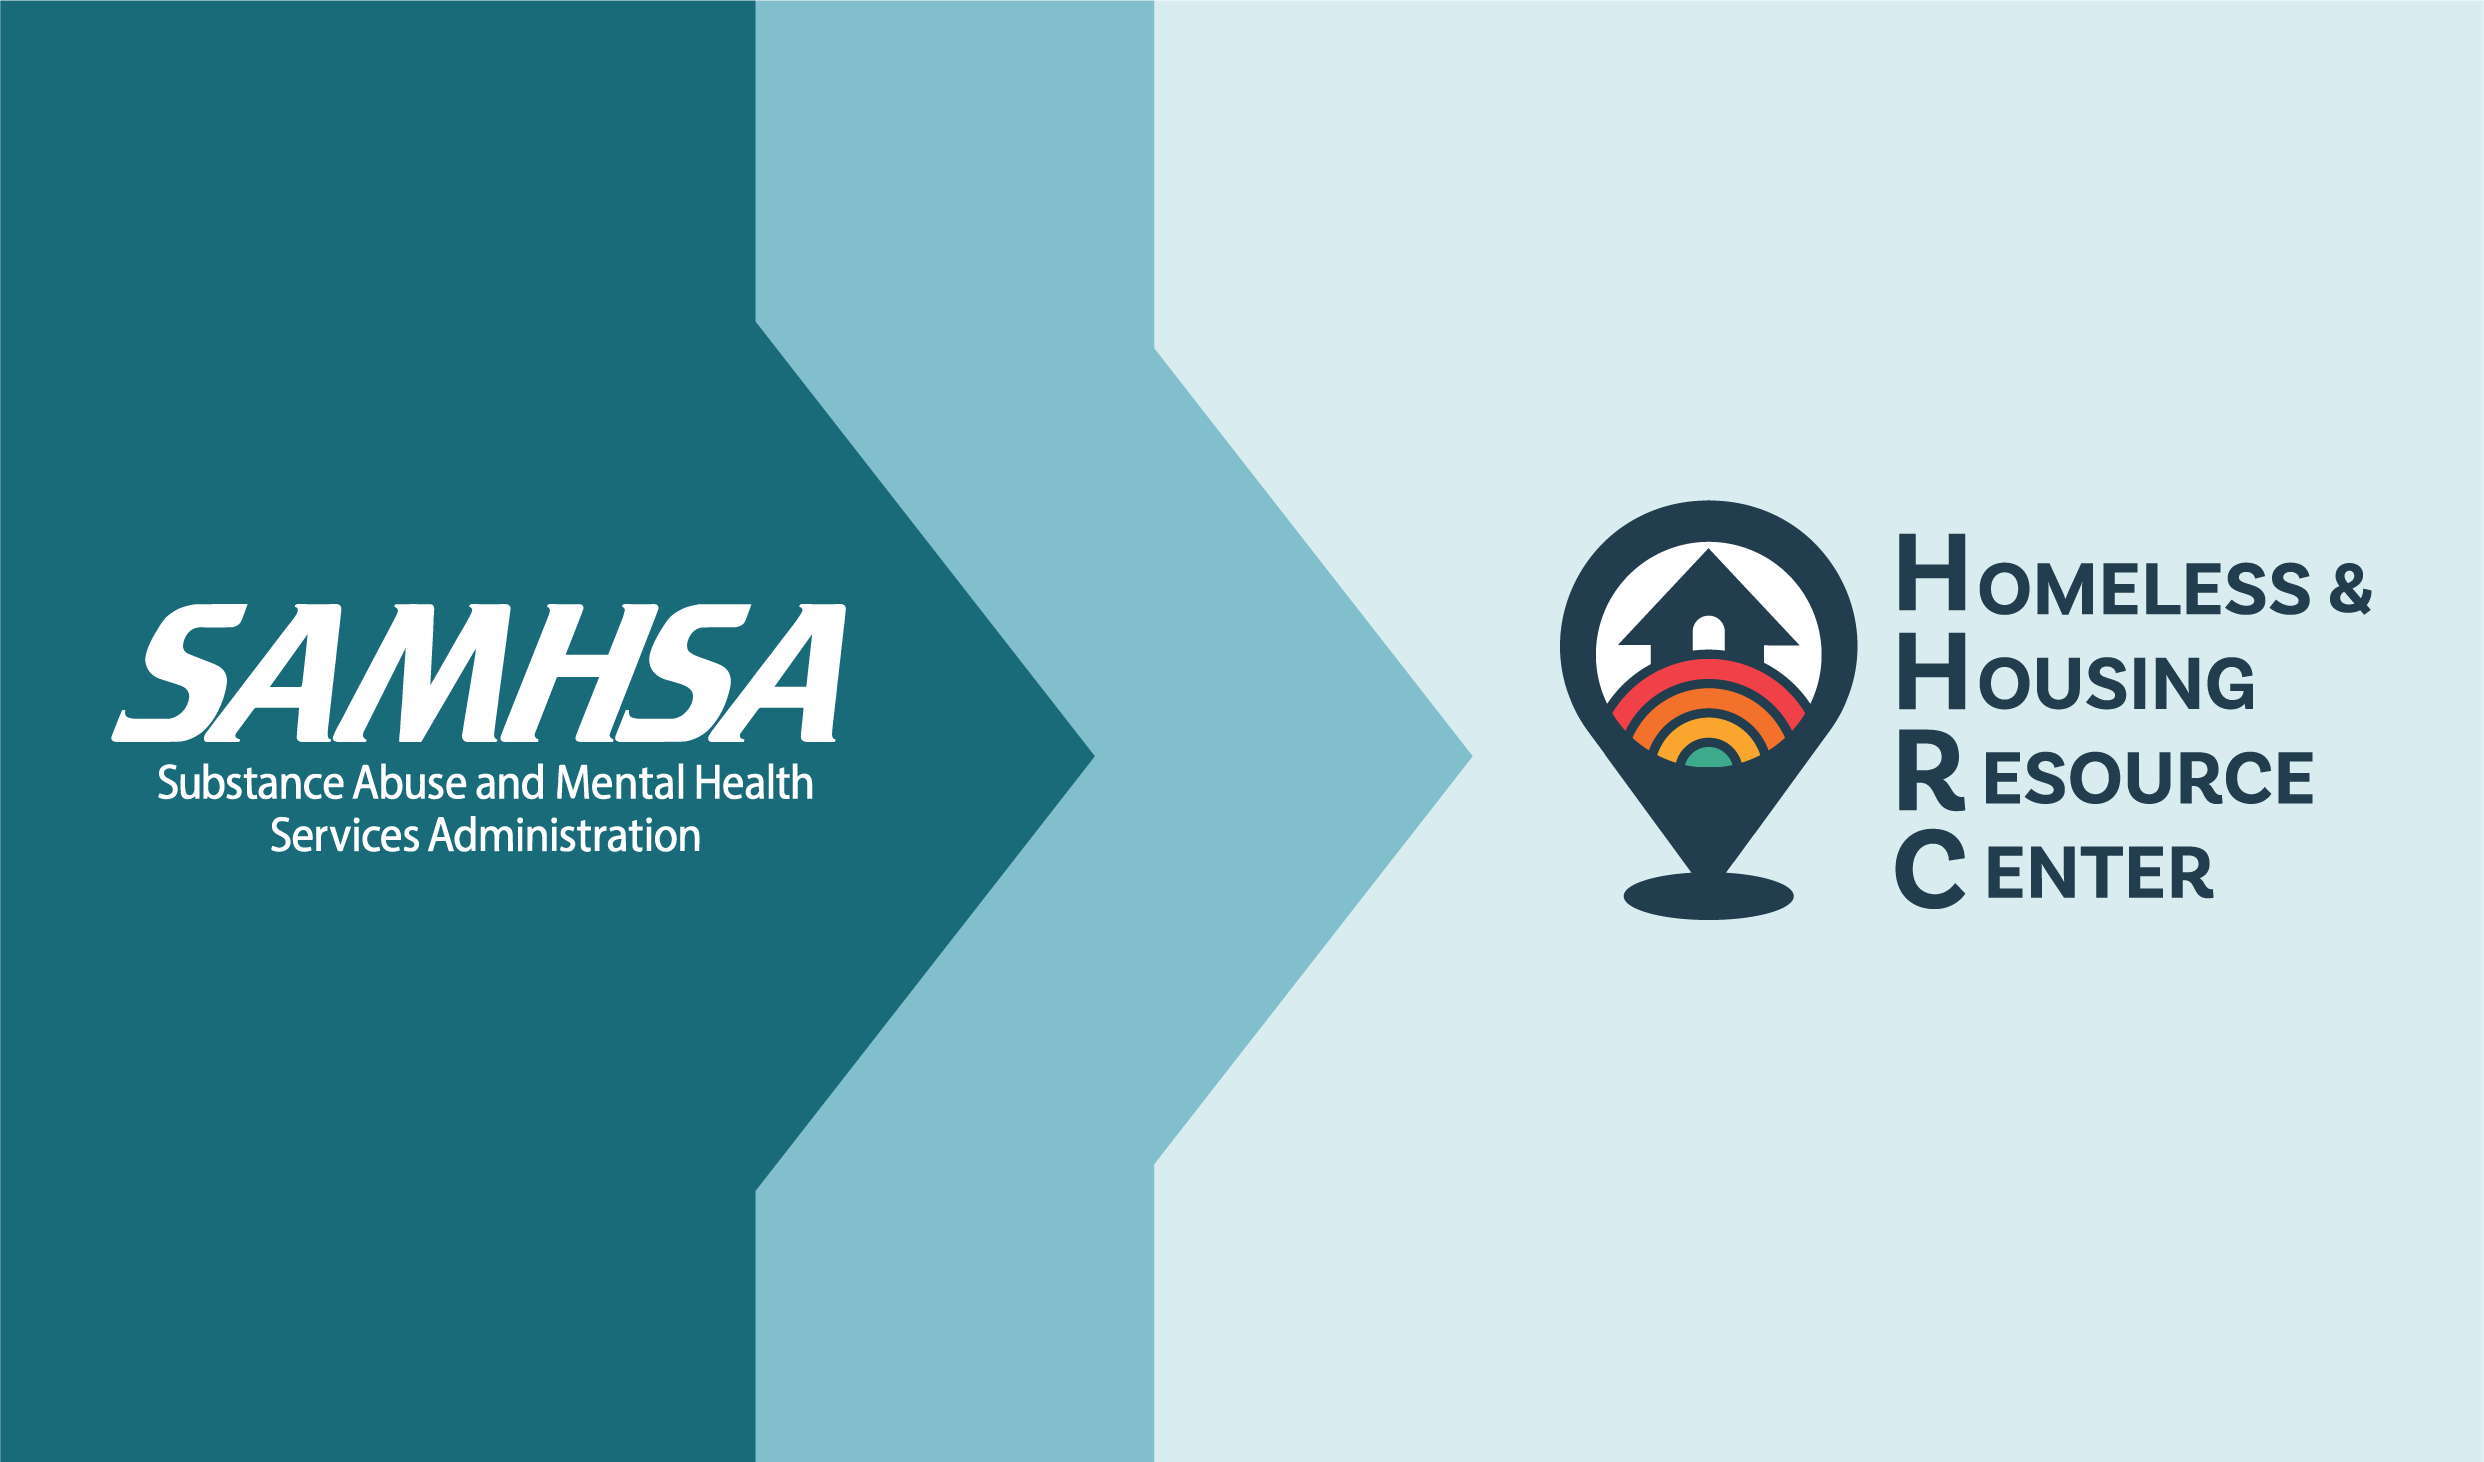 SAMHSA and HHRC logo